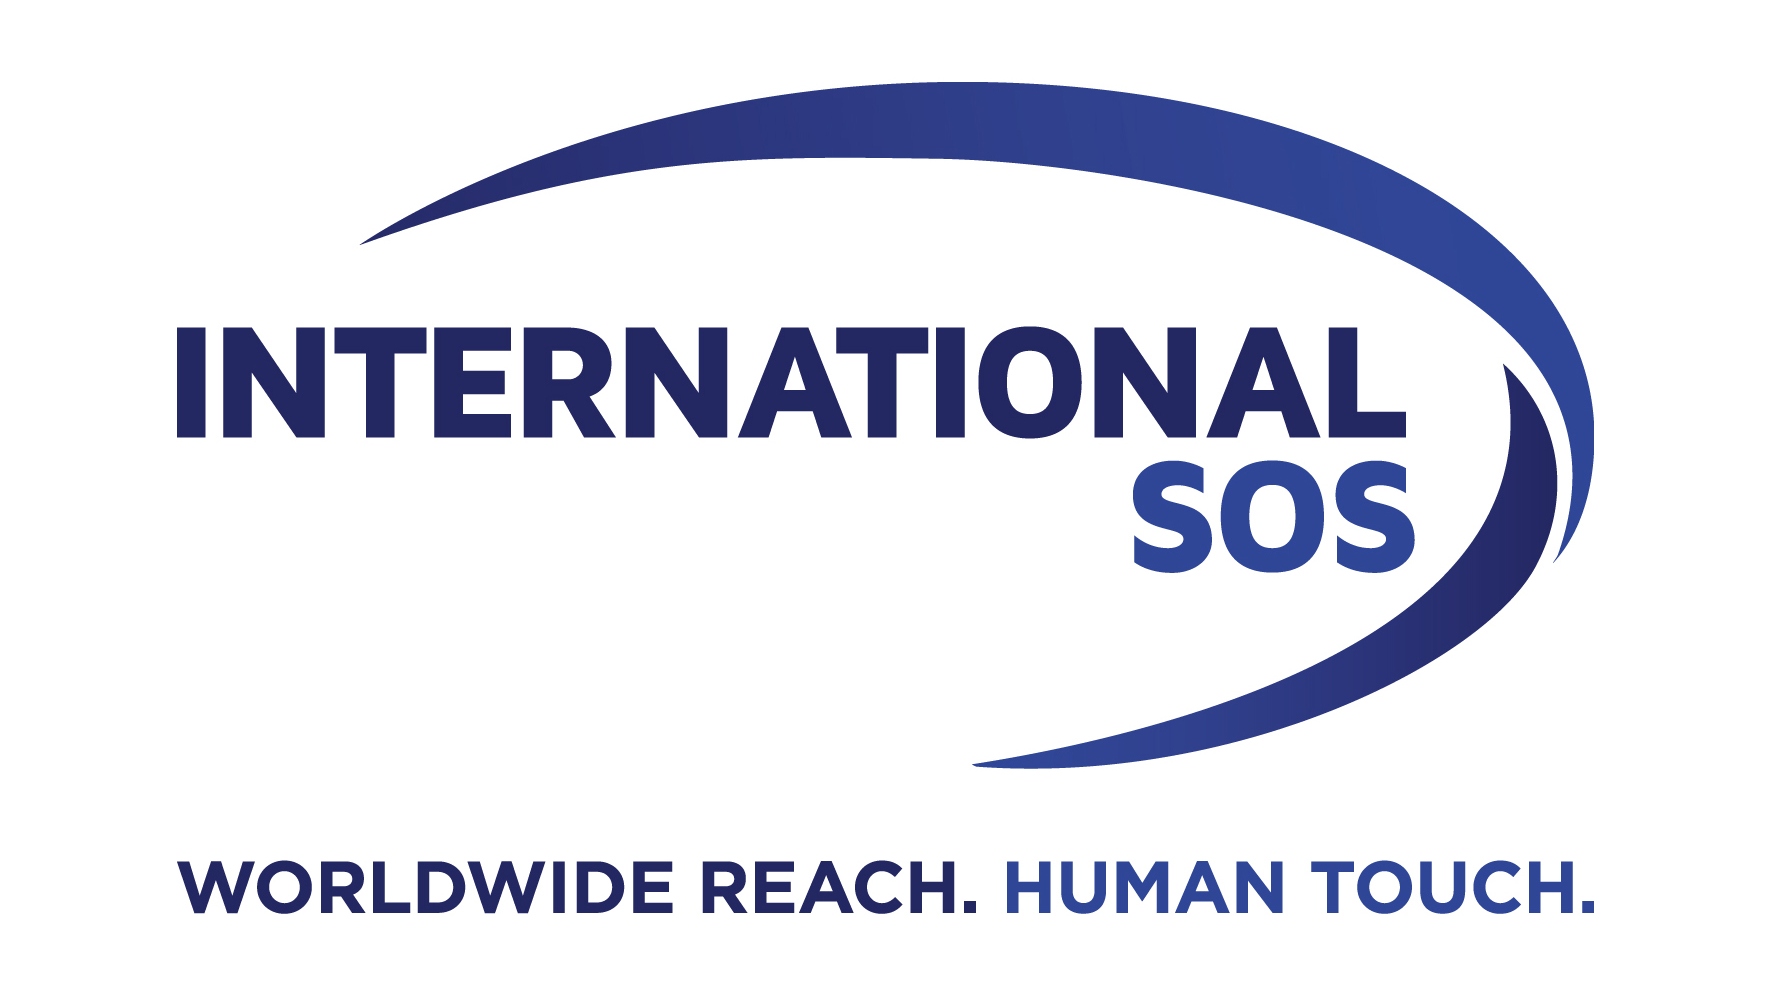 International SOS Worldwide Reach Human Touch